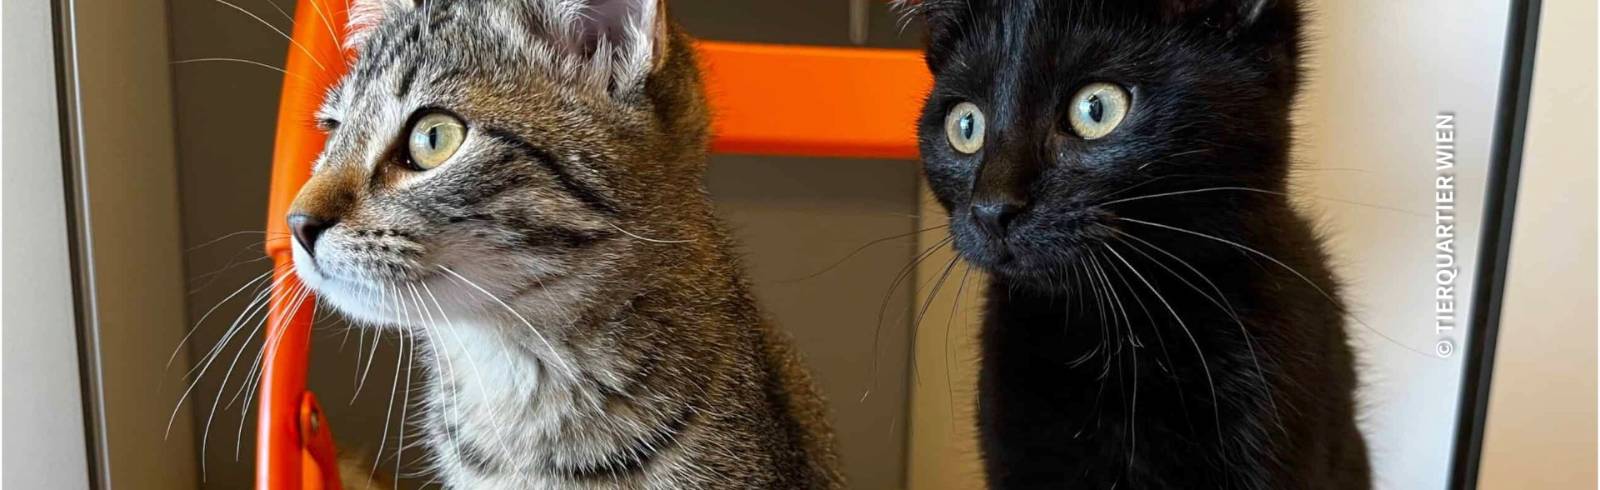 Bezirksflash: Katzenfund in Ottakring